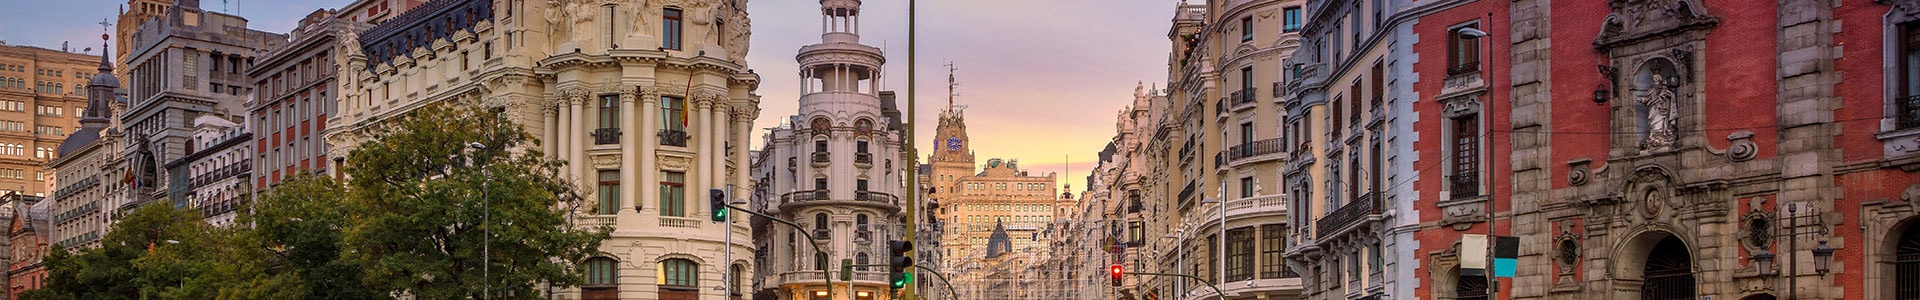 Madrid - TUI